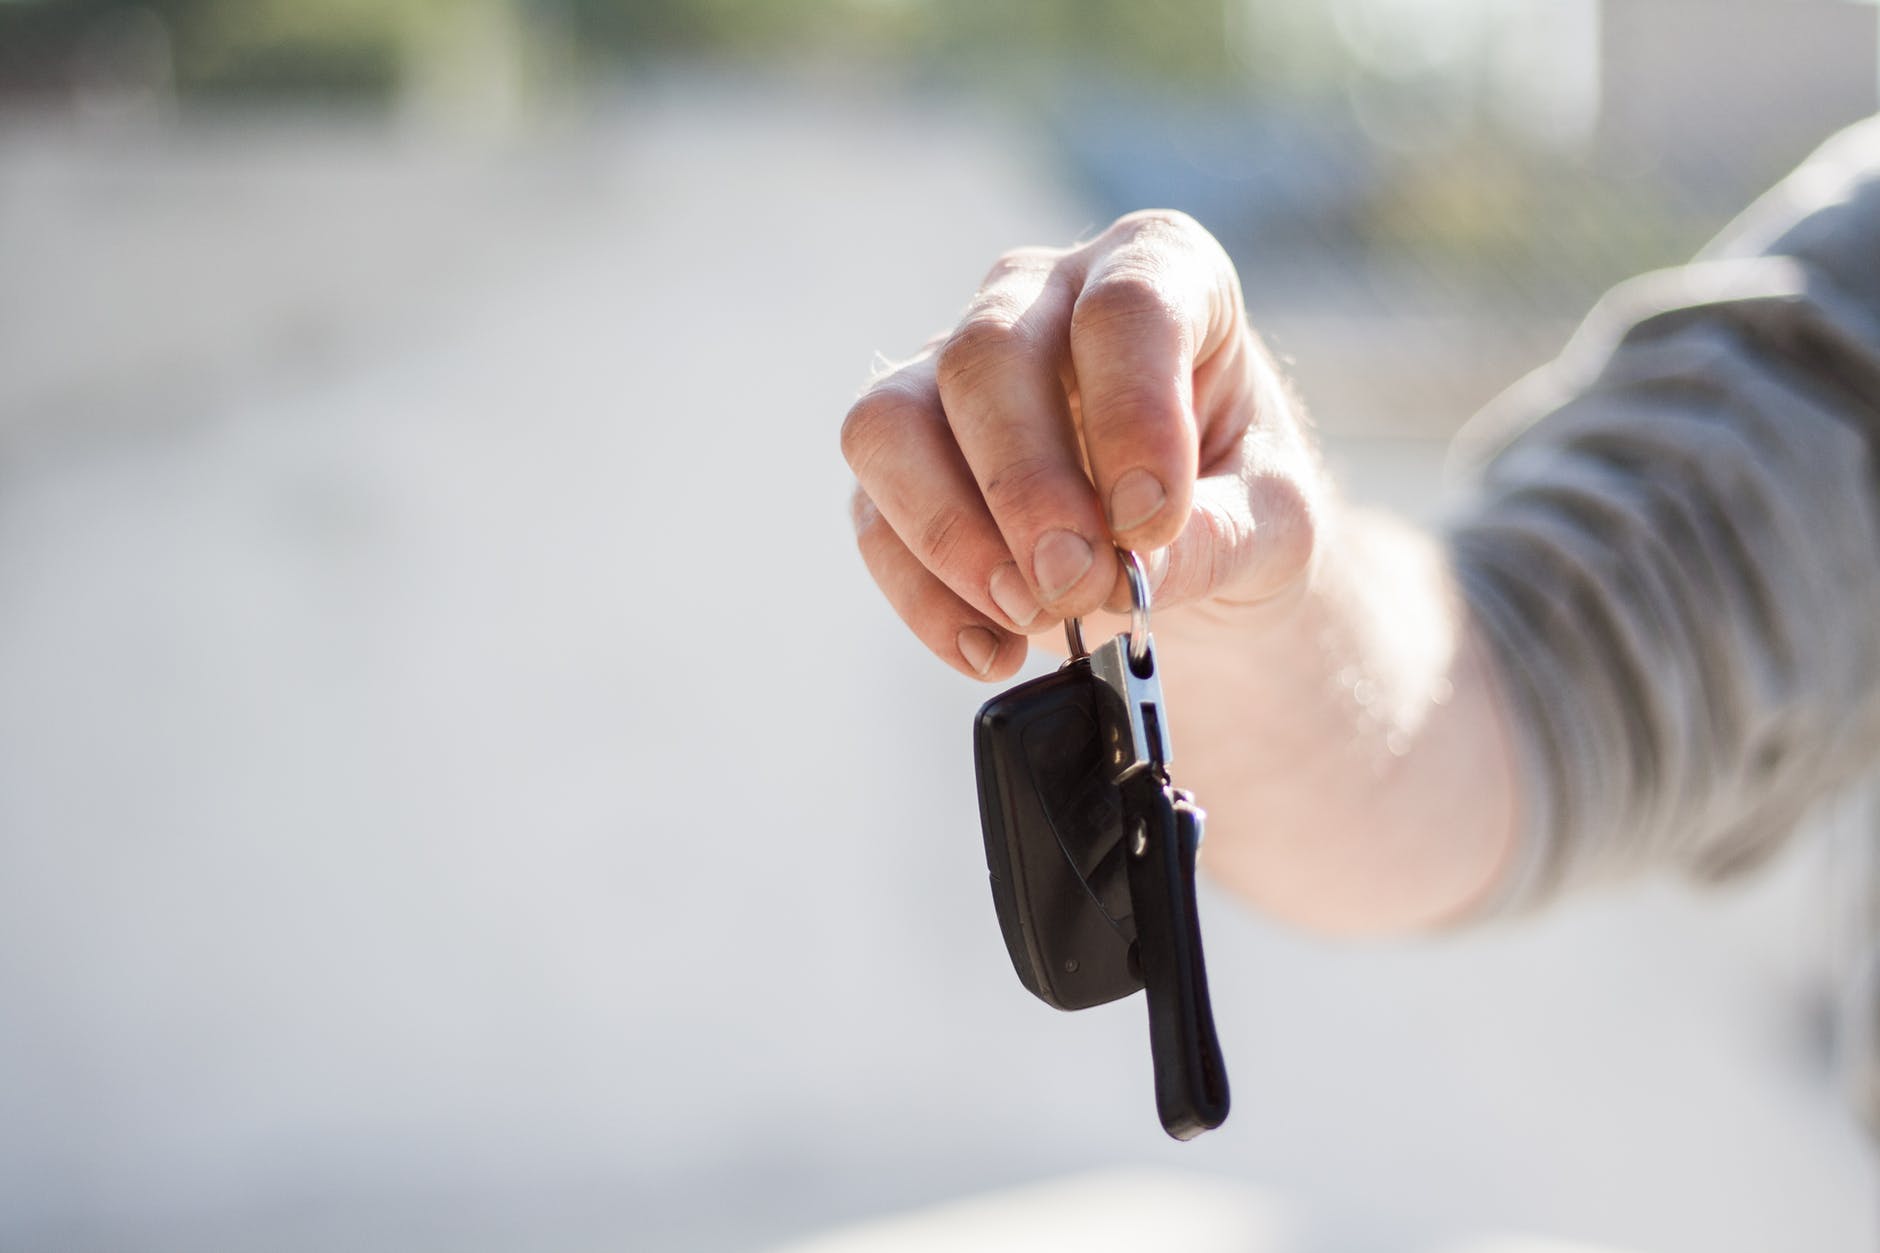 L'image représente des clefs de voiture à la suite de la vente d'un véhicule et la résiliation de l'assurance auto